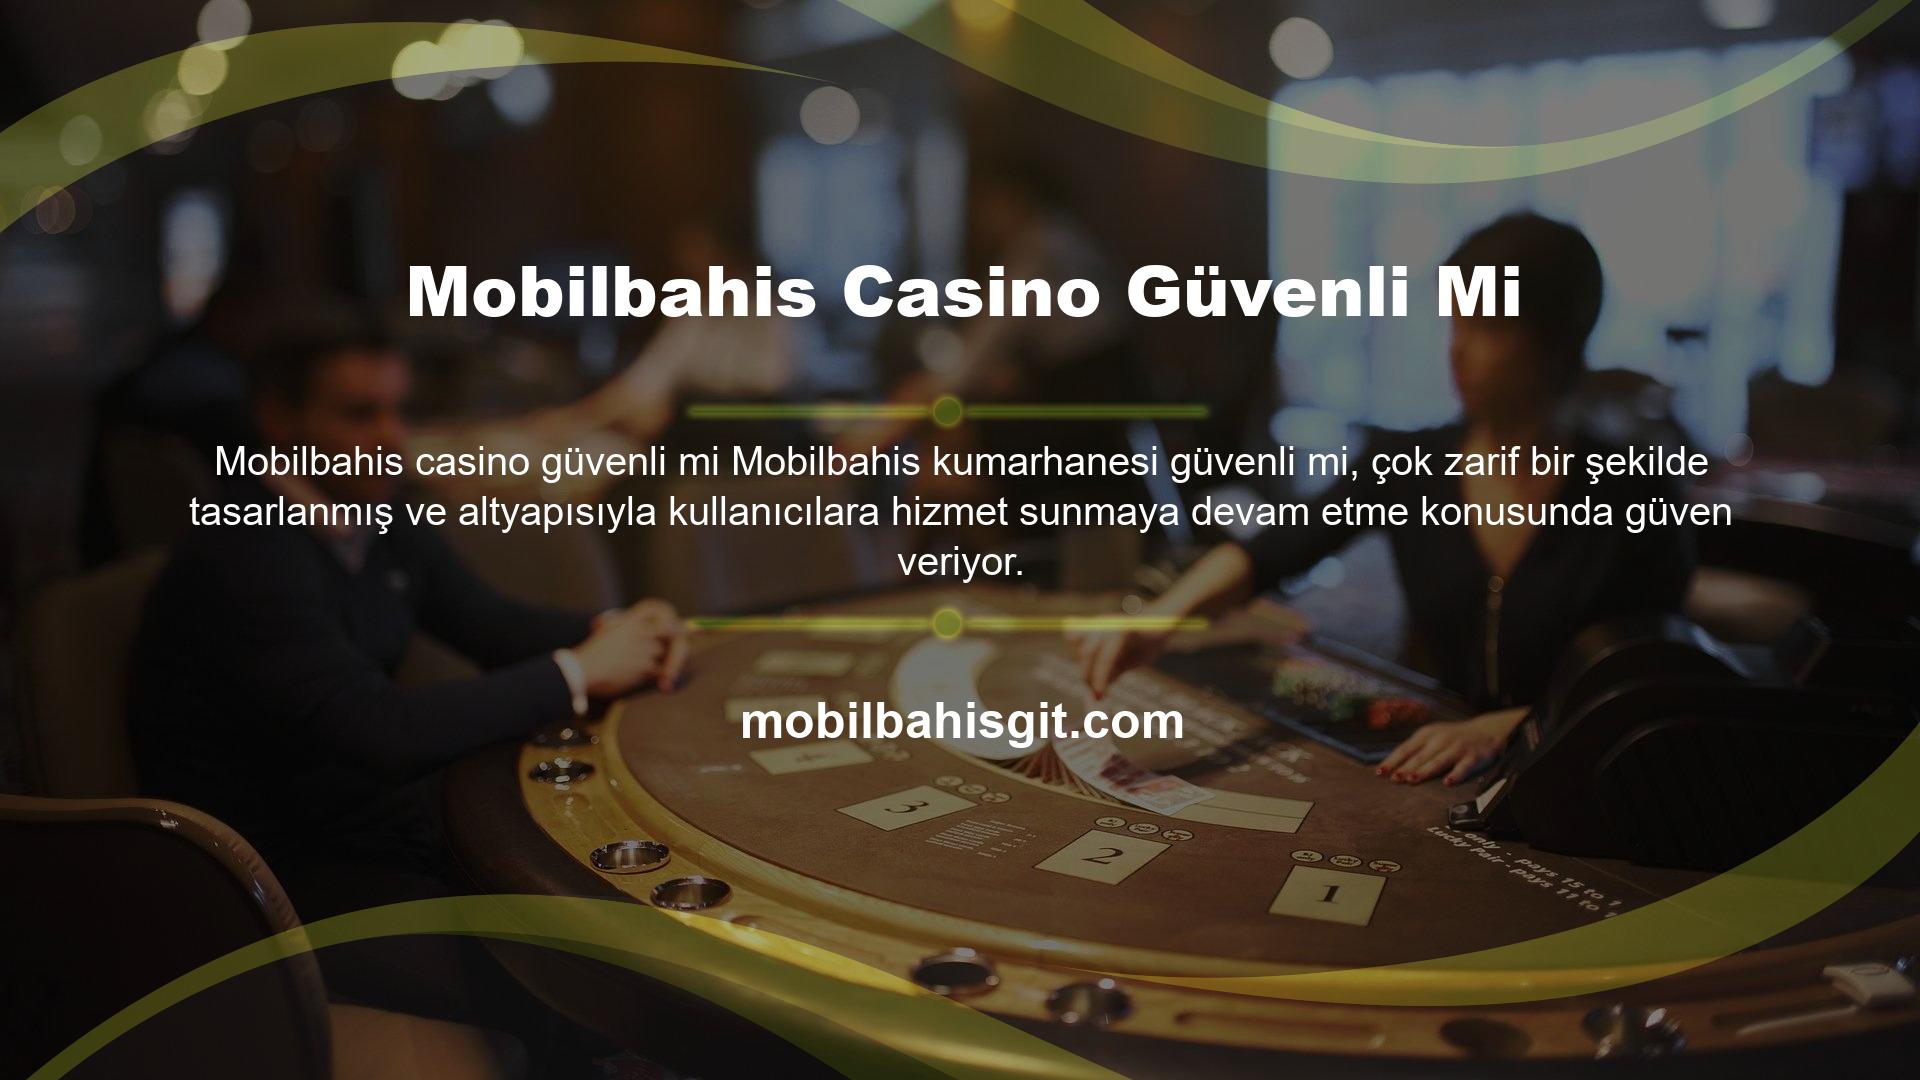 Kısa sürede oyun tutkunlarının gözdesi haline gelen Mobilbahis, özellikle oyun seçenekleri ile dikkatleri üzerine çekiyor hatta casino alanını seven müşterilerin siteyi bu yüzden çok sevdiği paylaşılıyor